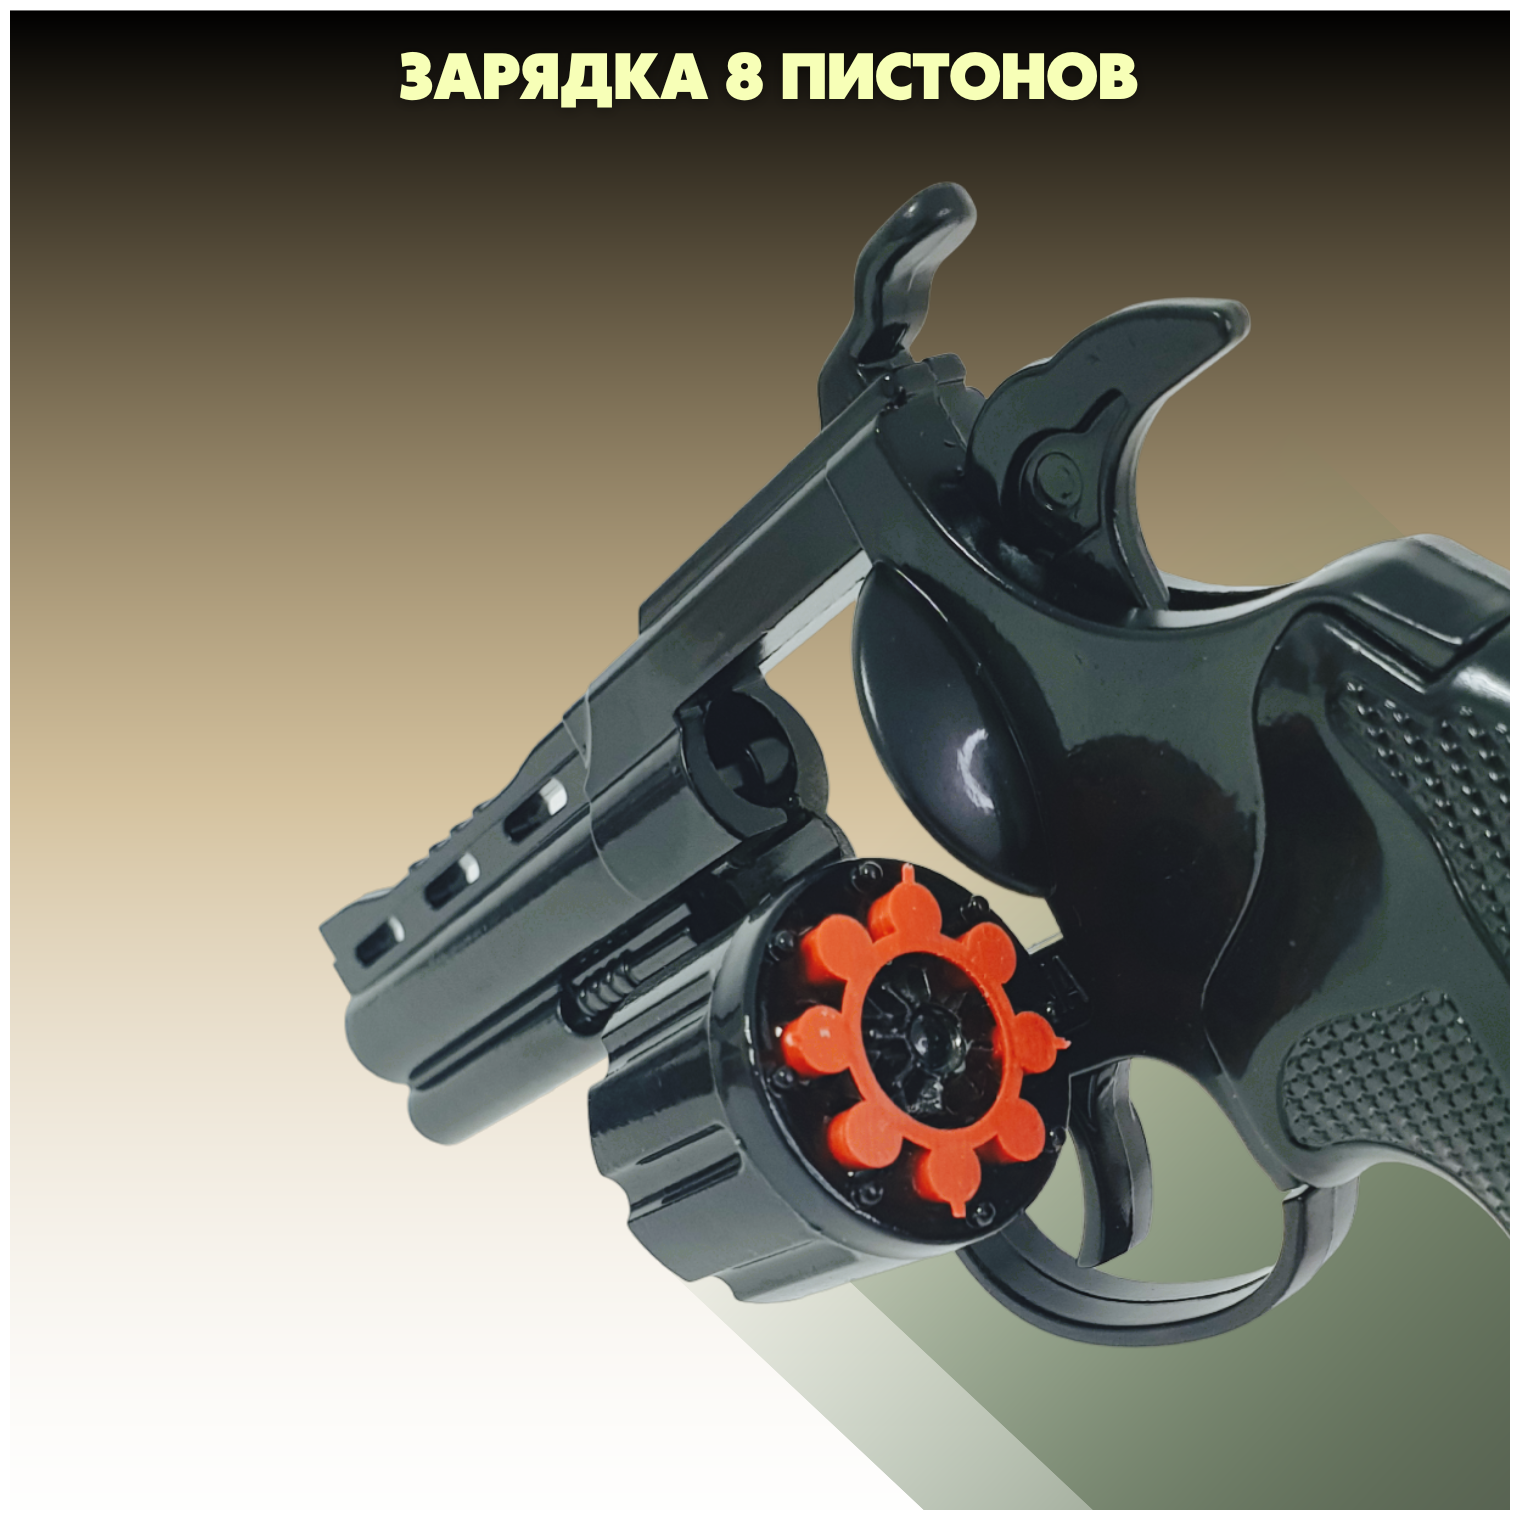 Пистолет металлический с кобурой, пугач 360 пистонов в комплекте, черный